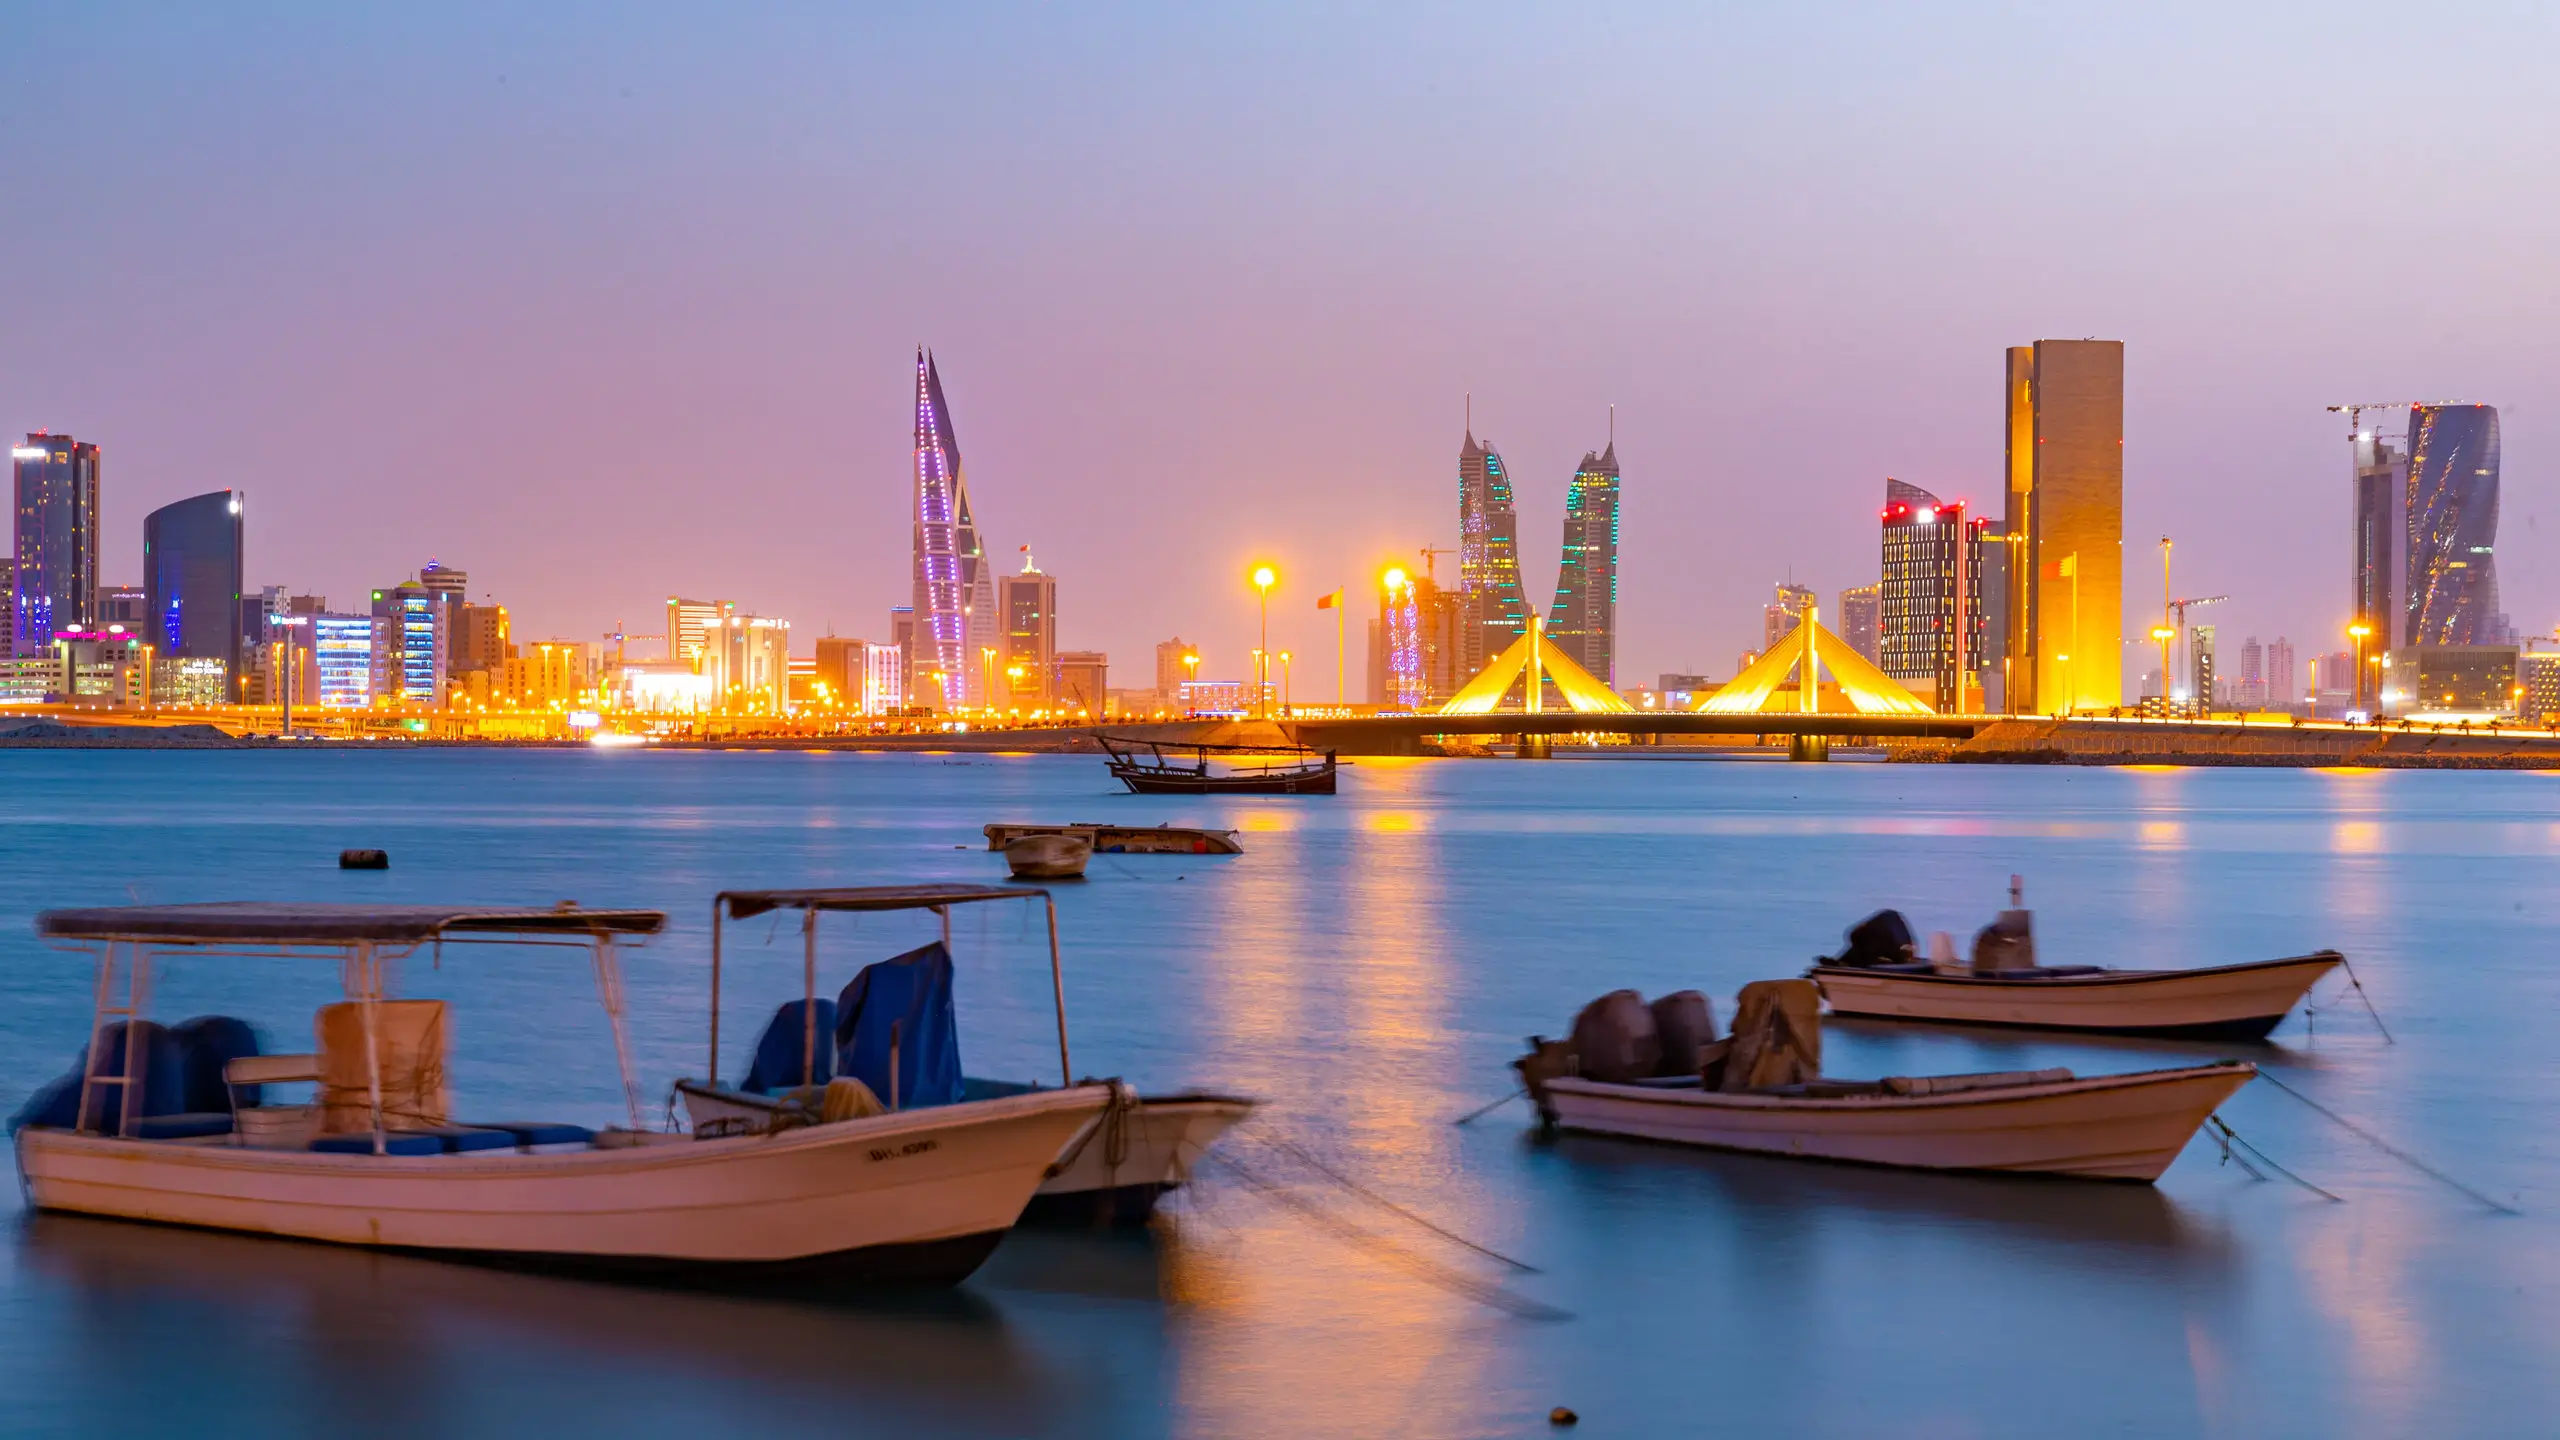 Manama - The Capital of Bahrain